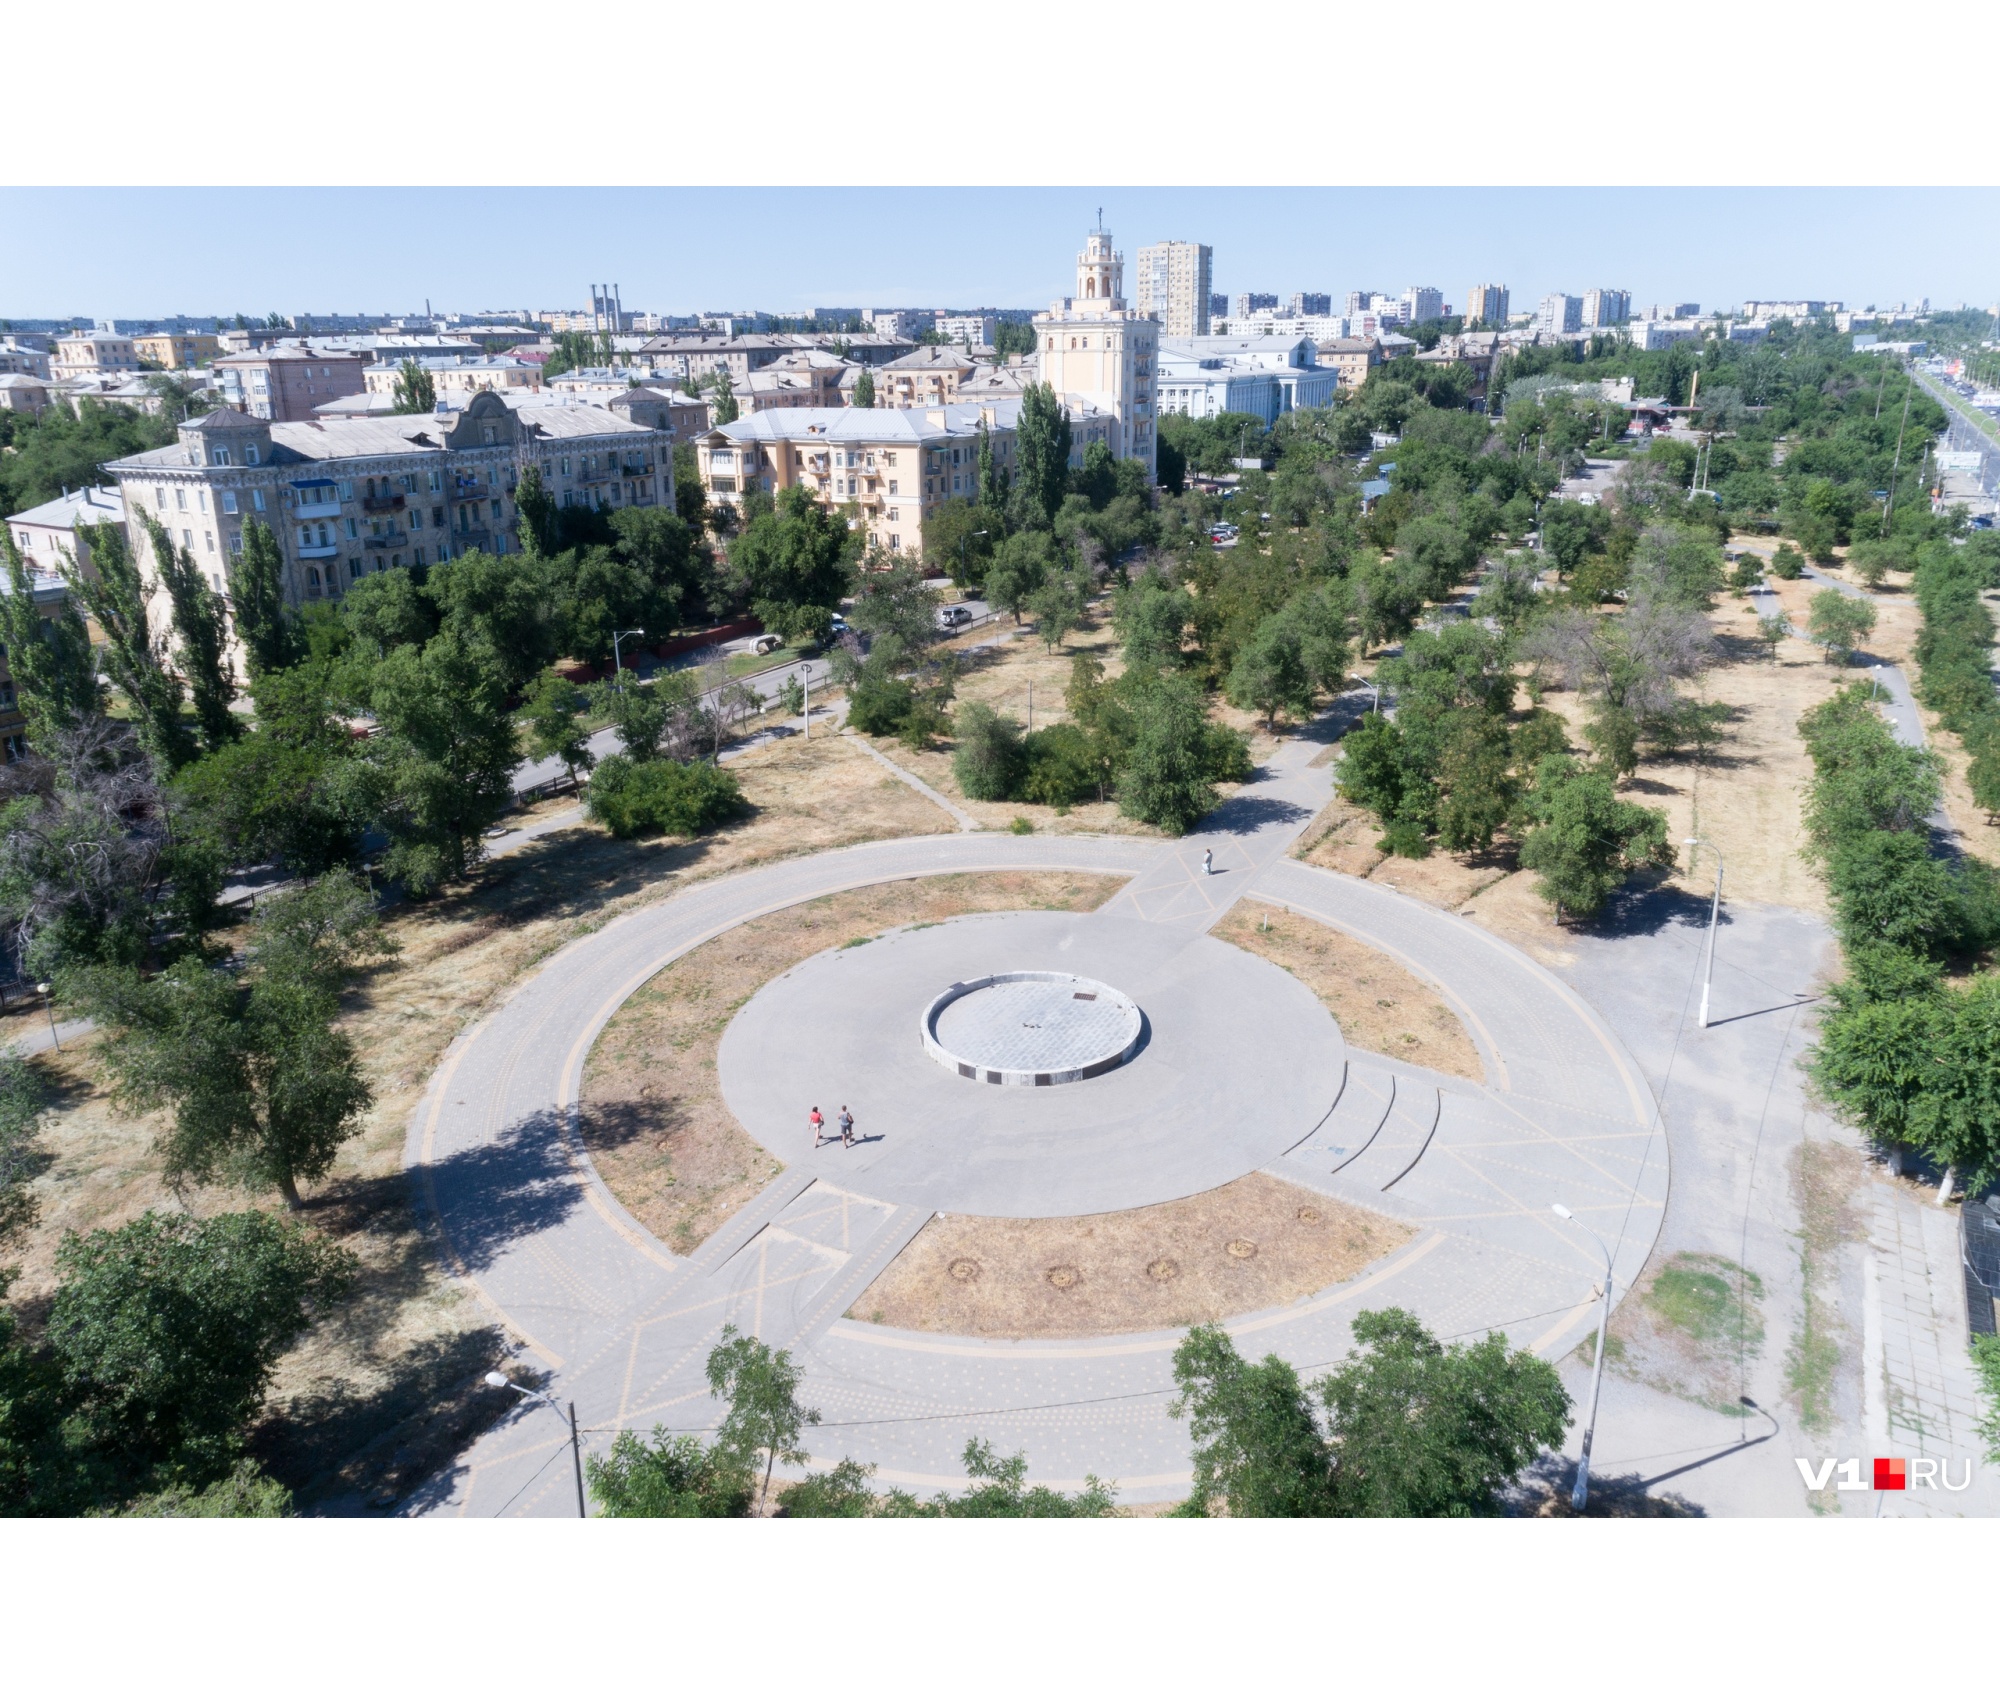 Он больше не памятник трагедии: в Волгограде демонтировали «фонтан-убийцу»